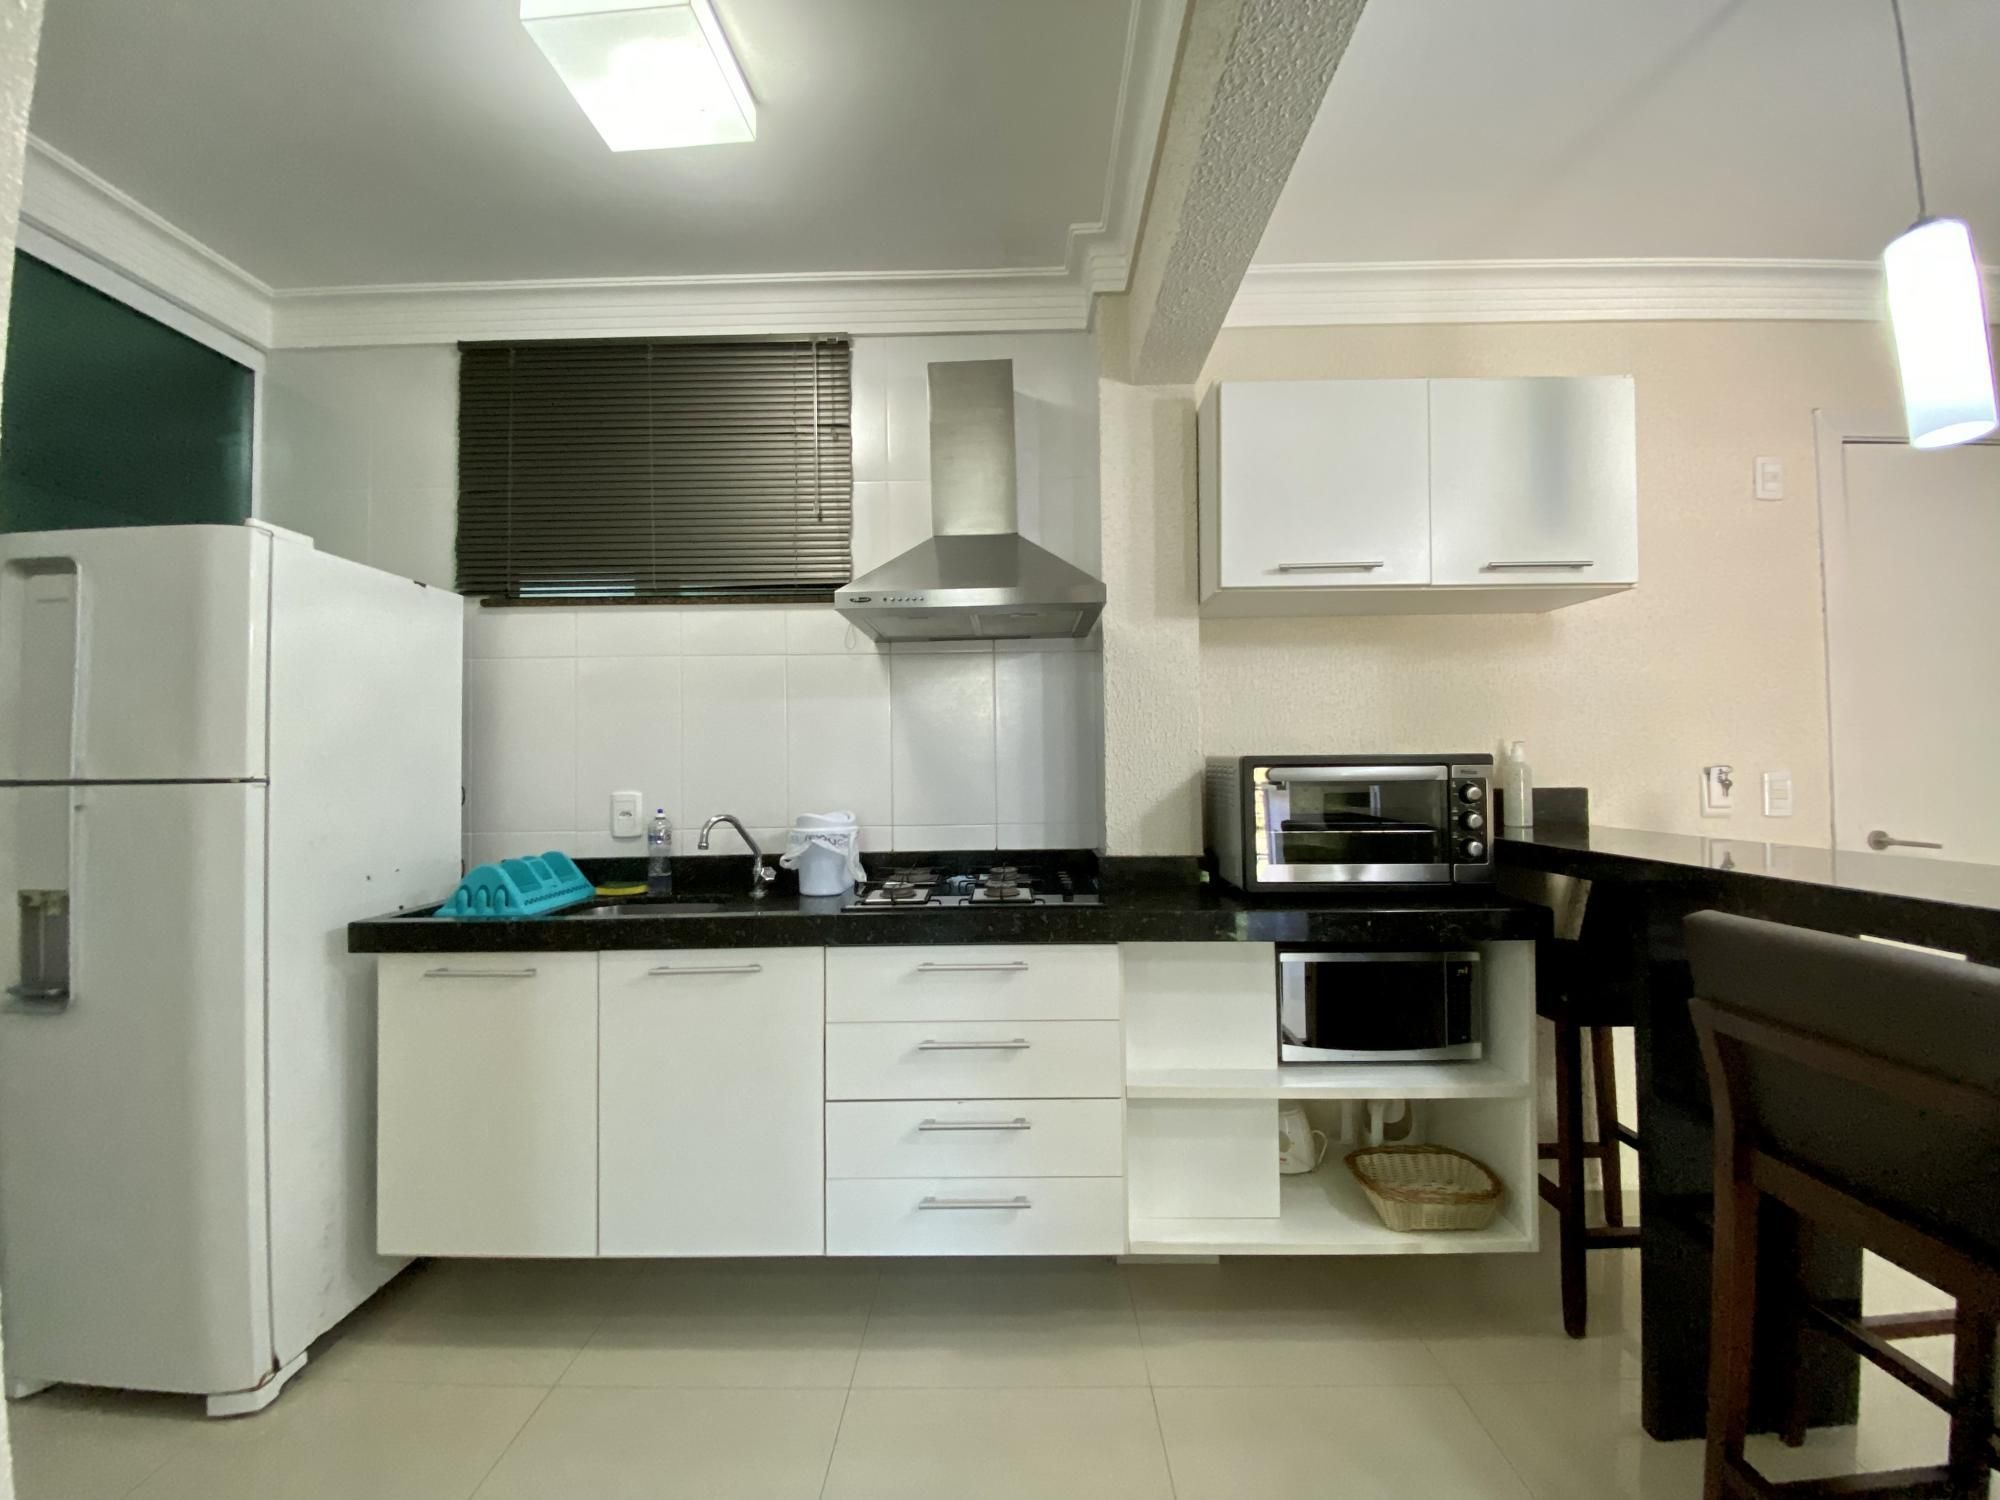 Apartamento com 1 Dormitórios para alugar, 44 m² valor à combinar